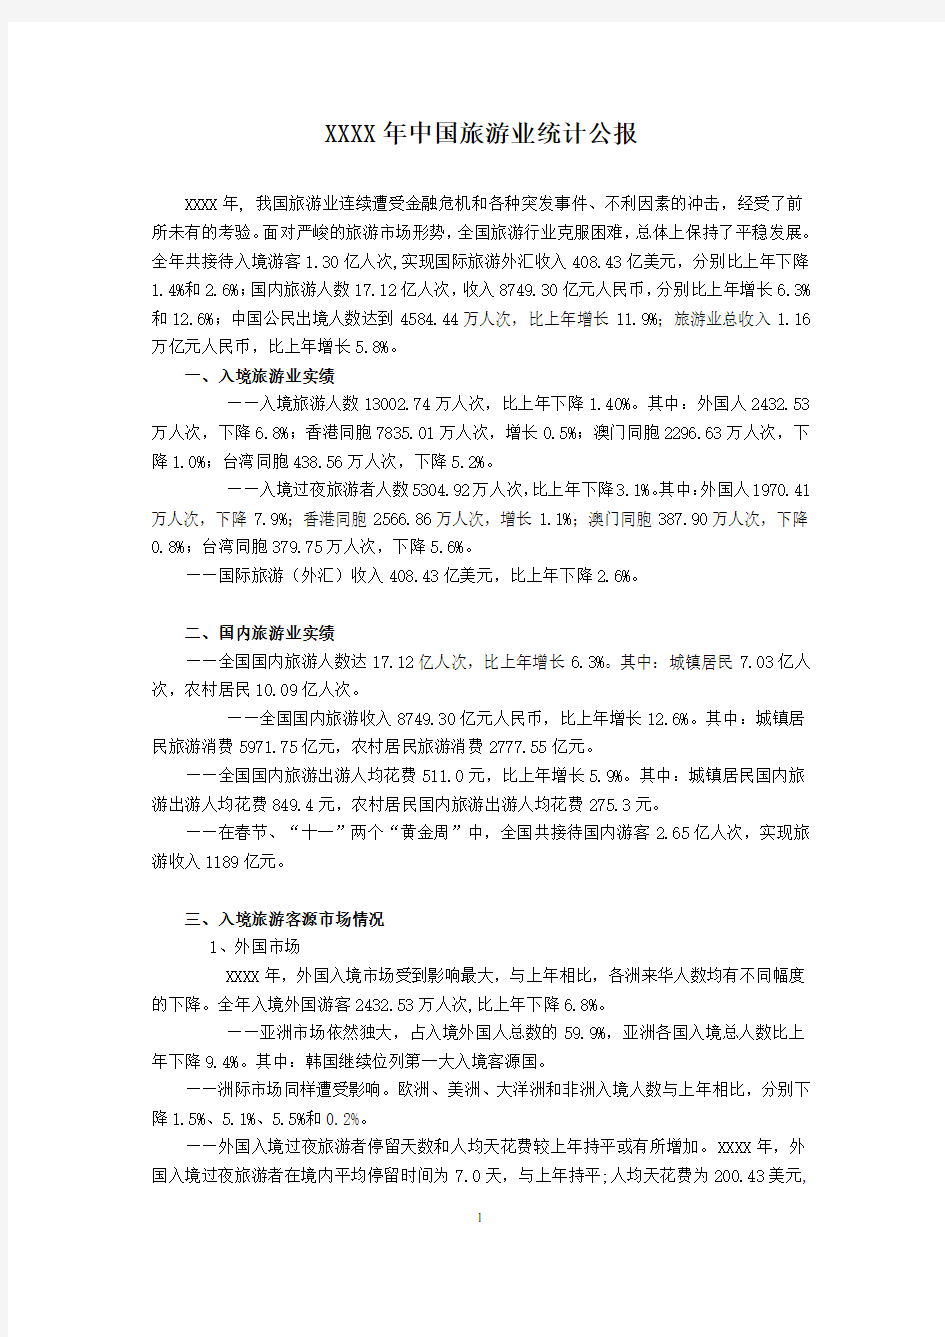 中国旅游业统计公报等数据.doc